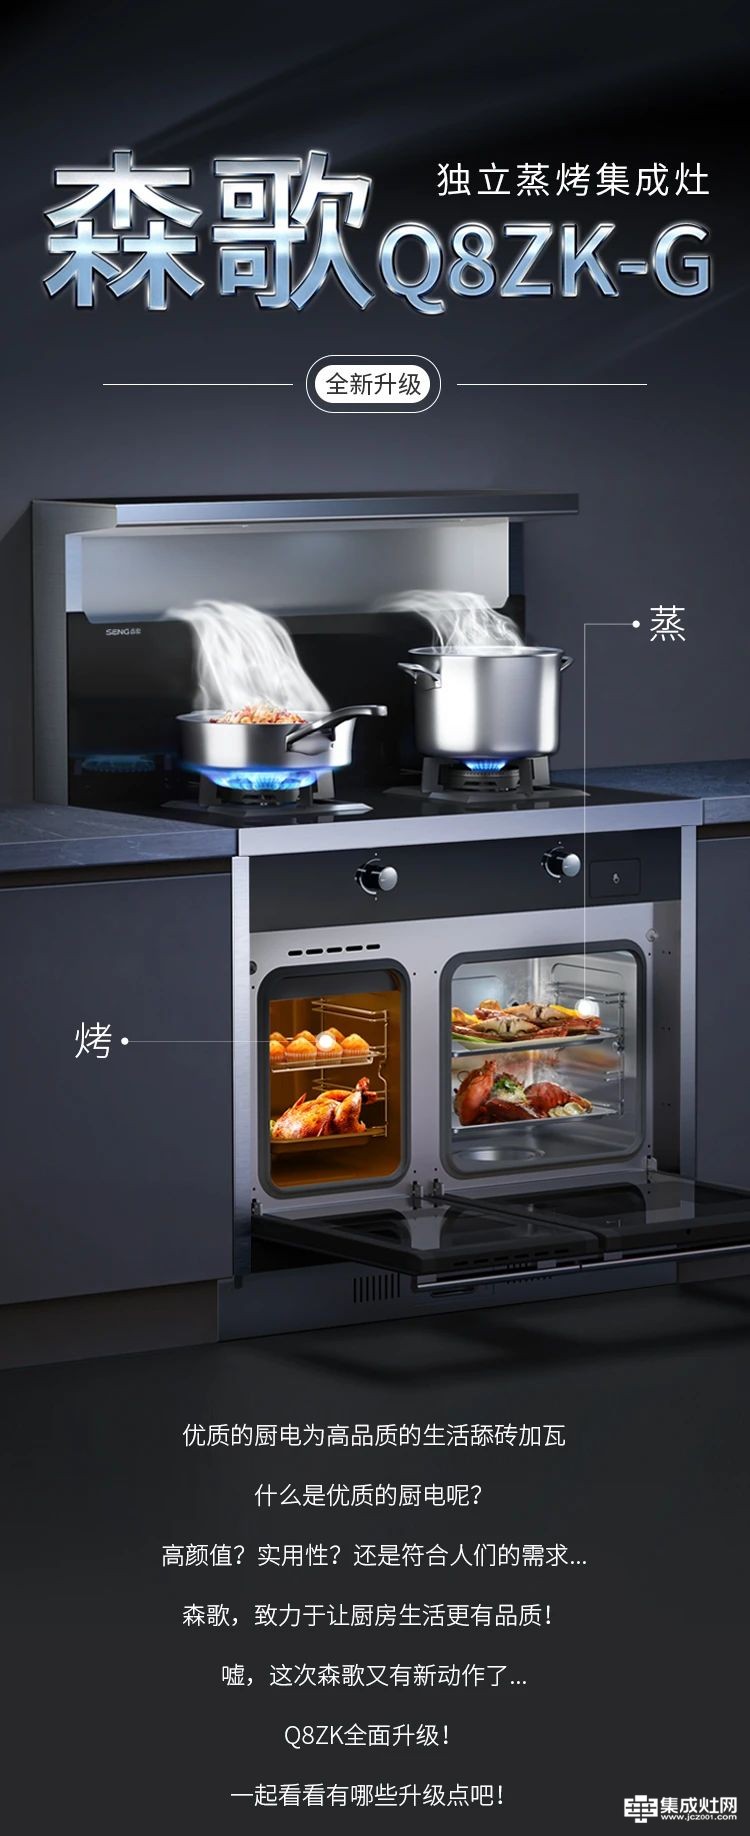 爆品全新升级上市 森歌Q8ZK-G独立蒸烤集成灶来了 双腔蒸烤齐开功 烹饪更高效